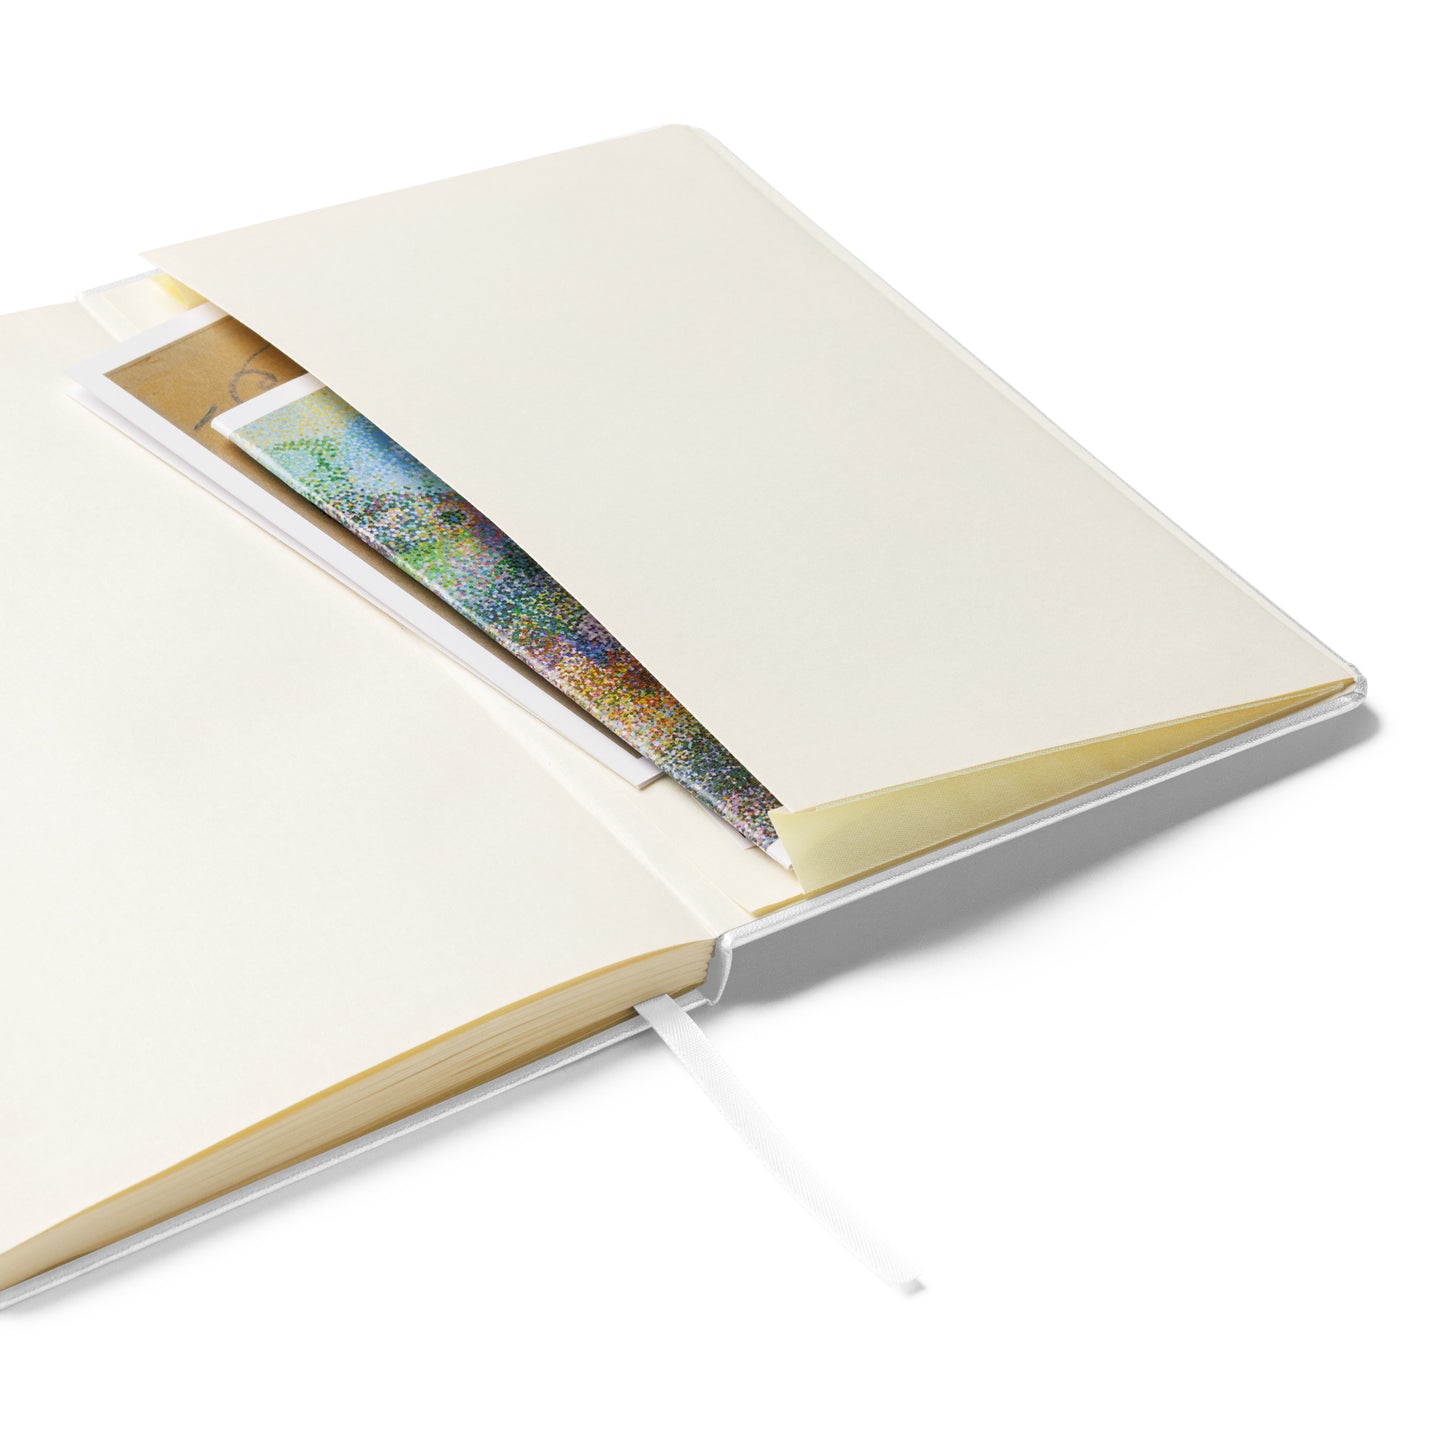 Inner Fokus Logo Hardcover bound notebook/journal (Navy Lettering)